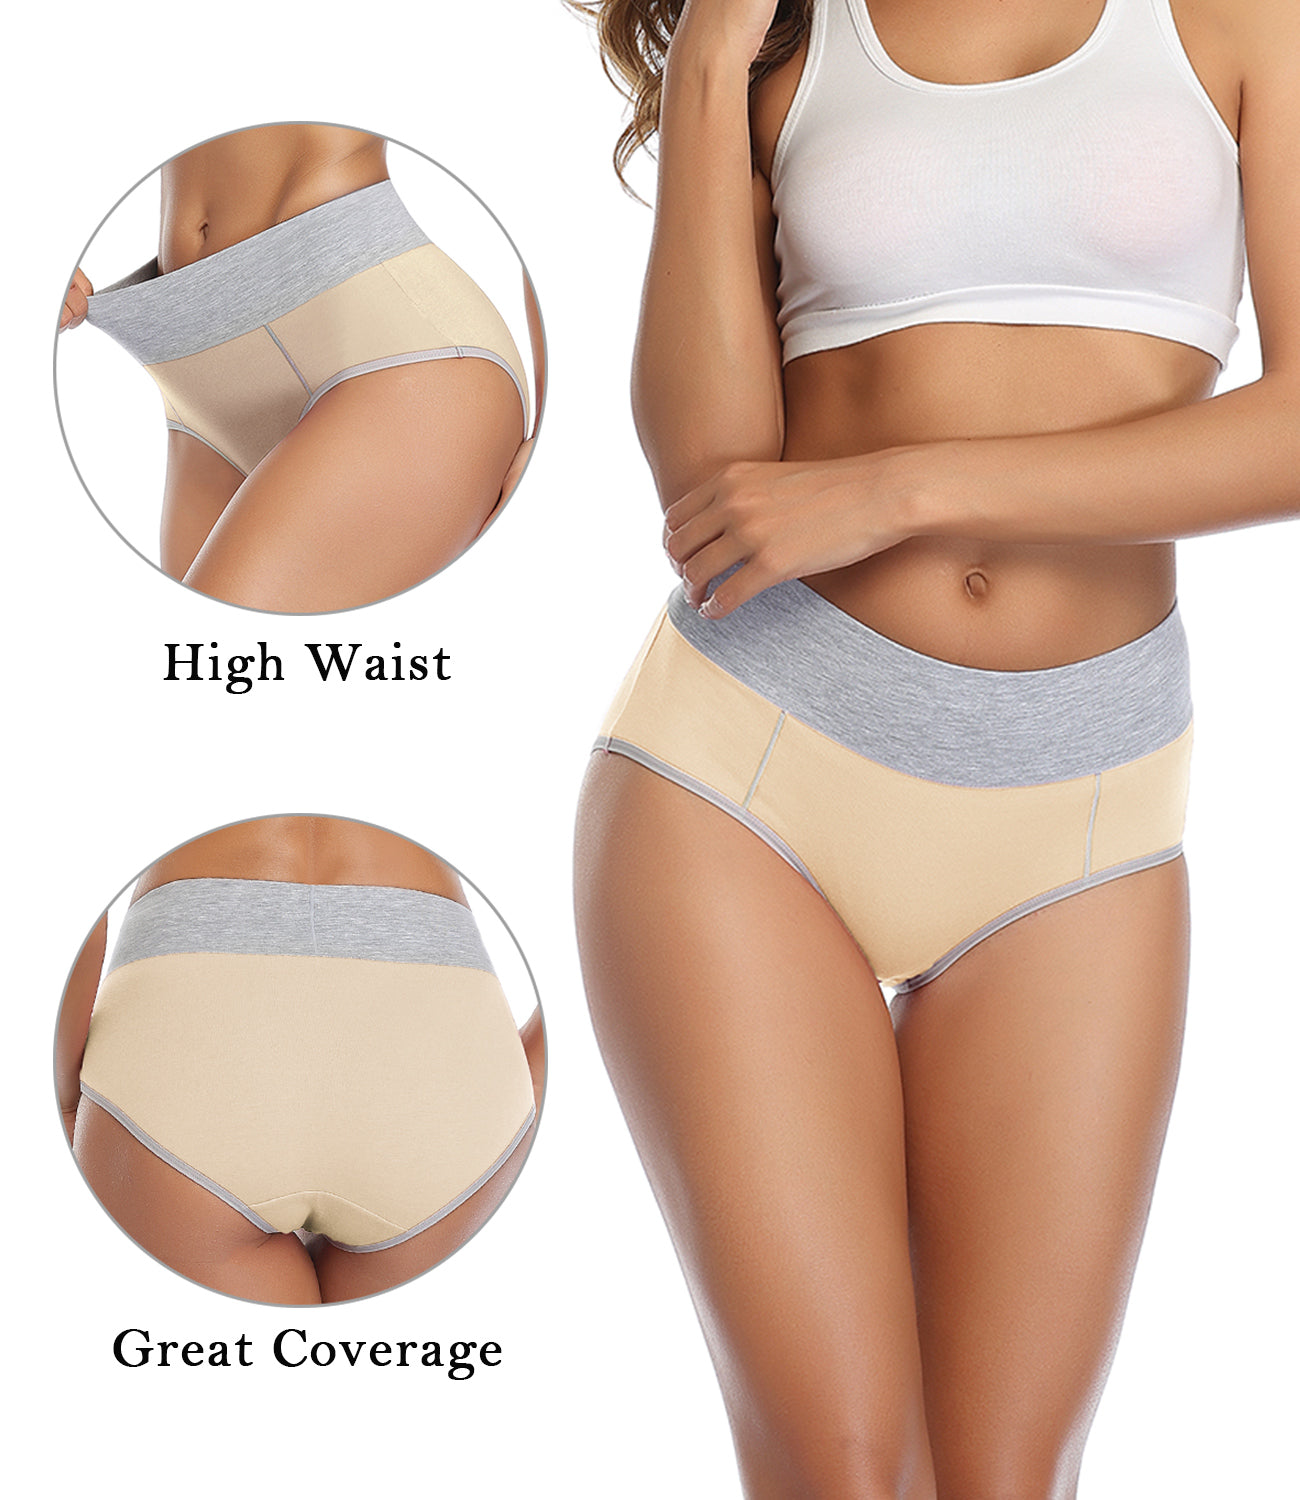 wirarpa Women's High Waisted Cotton Briefs Underwear 5 Pack